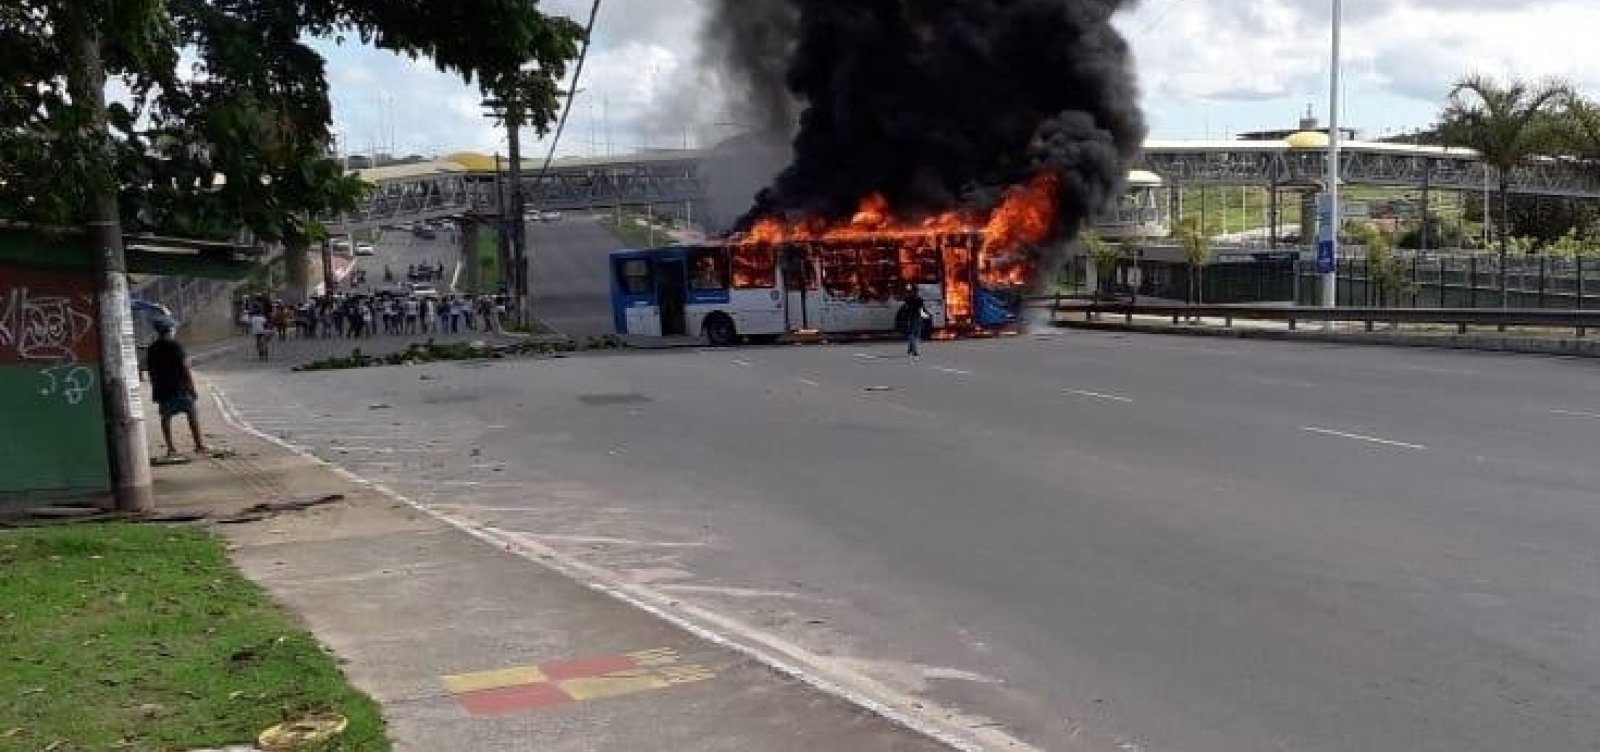 [Manifestantes ateiam fogo em ônibus atravessado na Paralela]